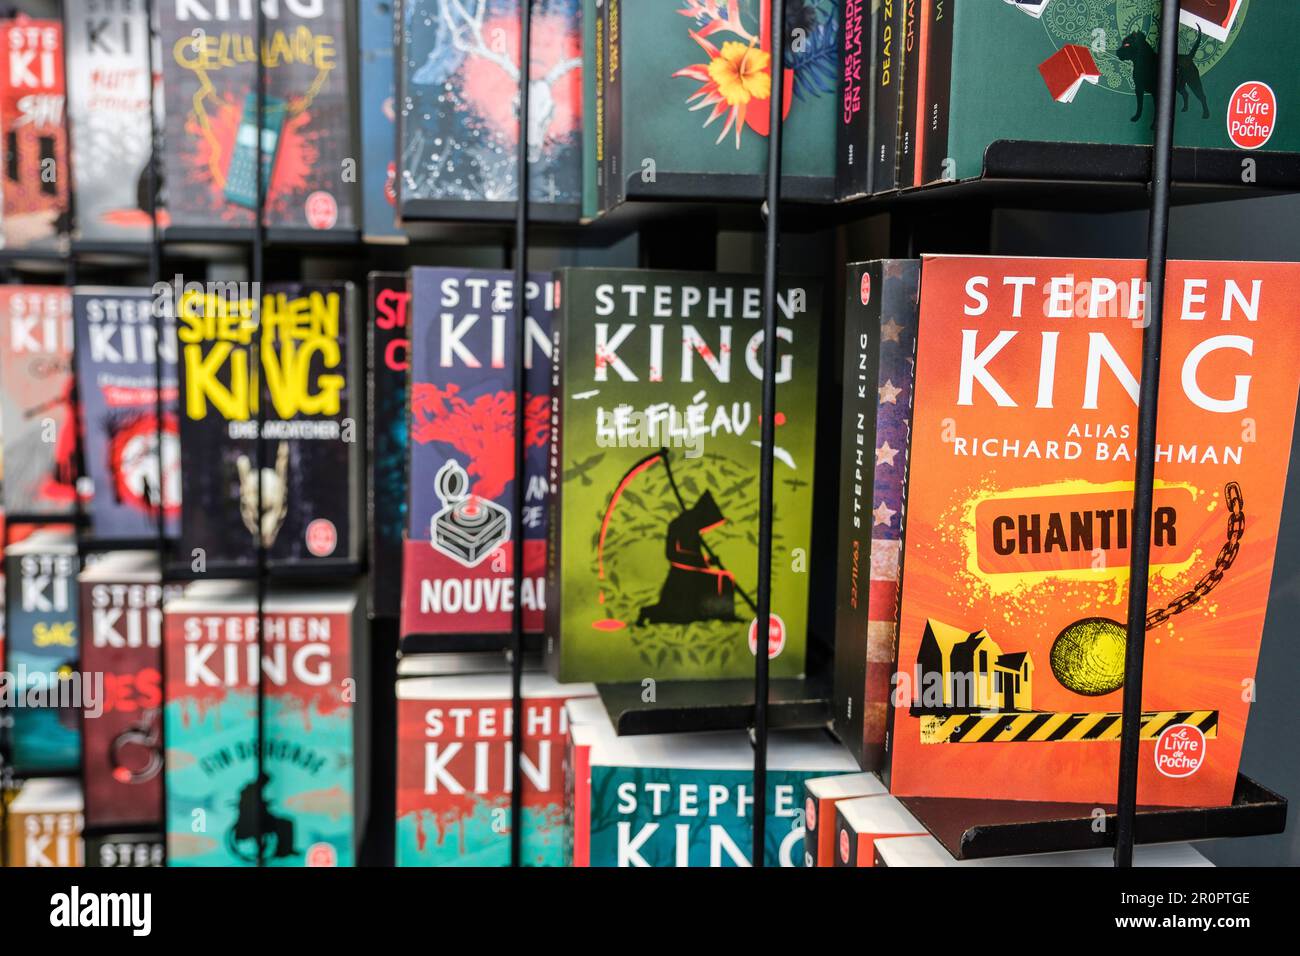 Foire du Livre de Bruxelles les gens se pressent autour des presentoirs 2023 Livres de Stephen King| Bruxelles Books fair 2023 - Stephen King's books Foto Stock